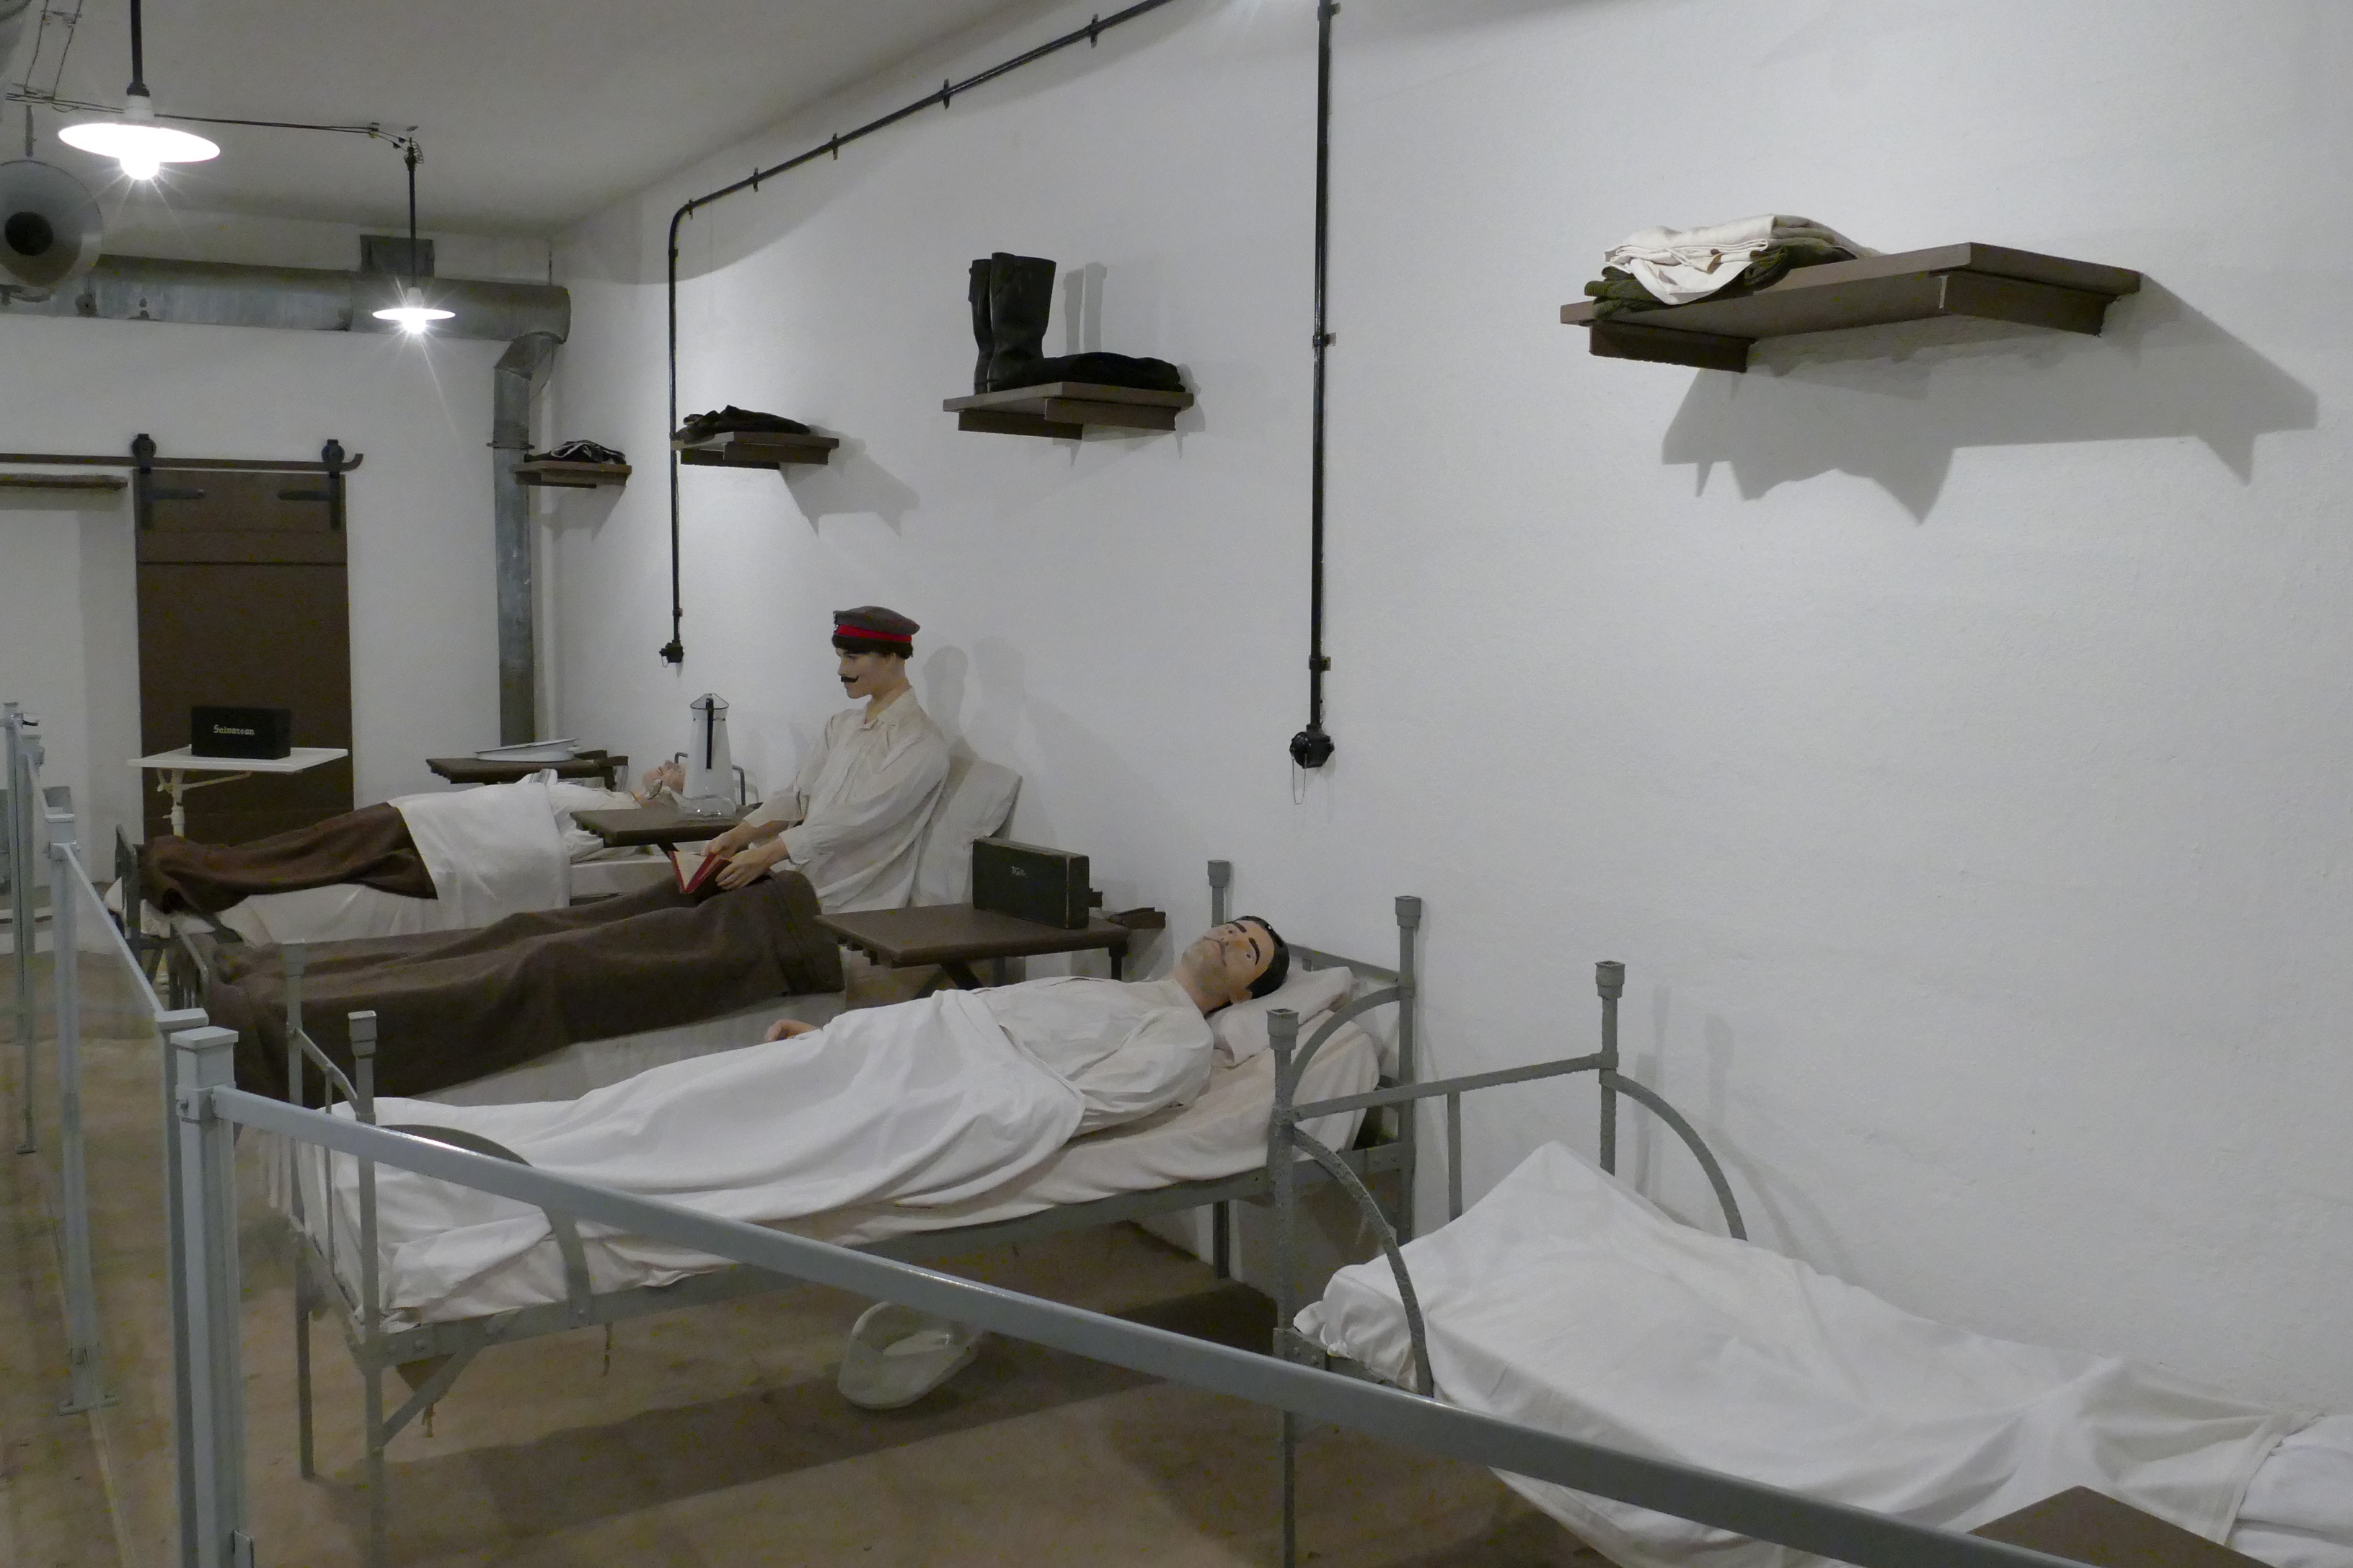 Kranke Soldaten als Puppen in Krankenbetten